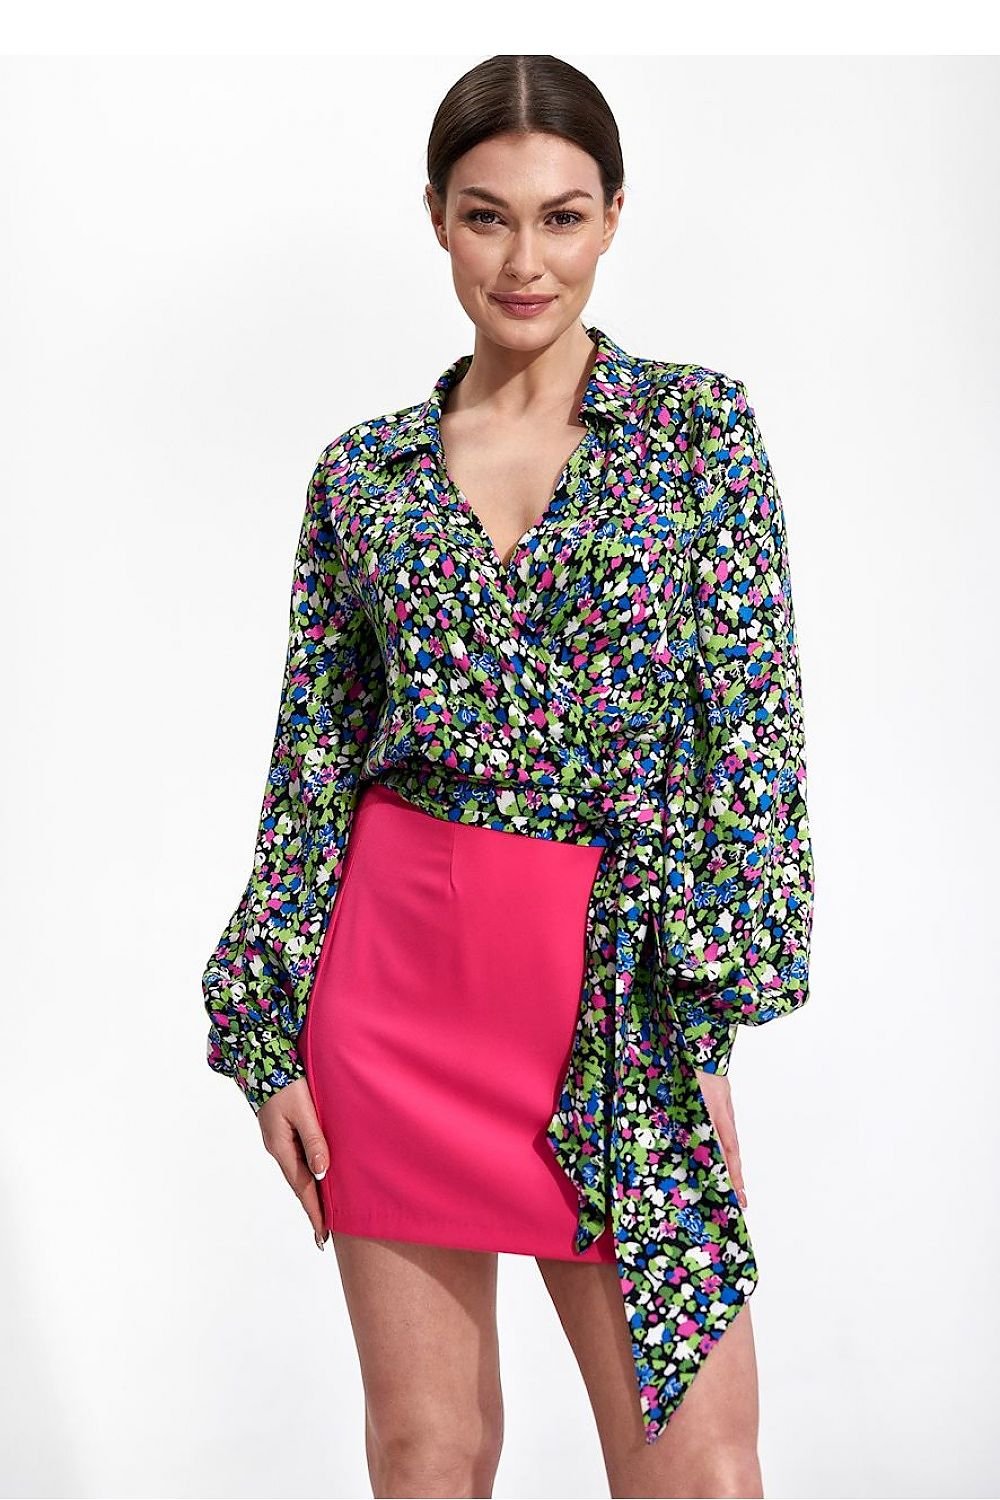 Jupe mini-jupe rose courte et droite pour une tenue moderne et féminine, parfaite pour sorties ou quotidien.